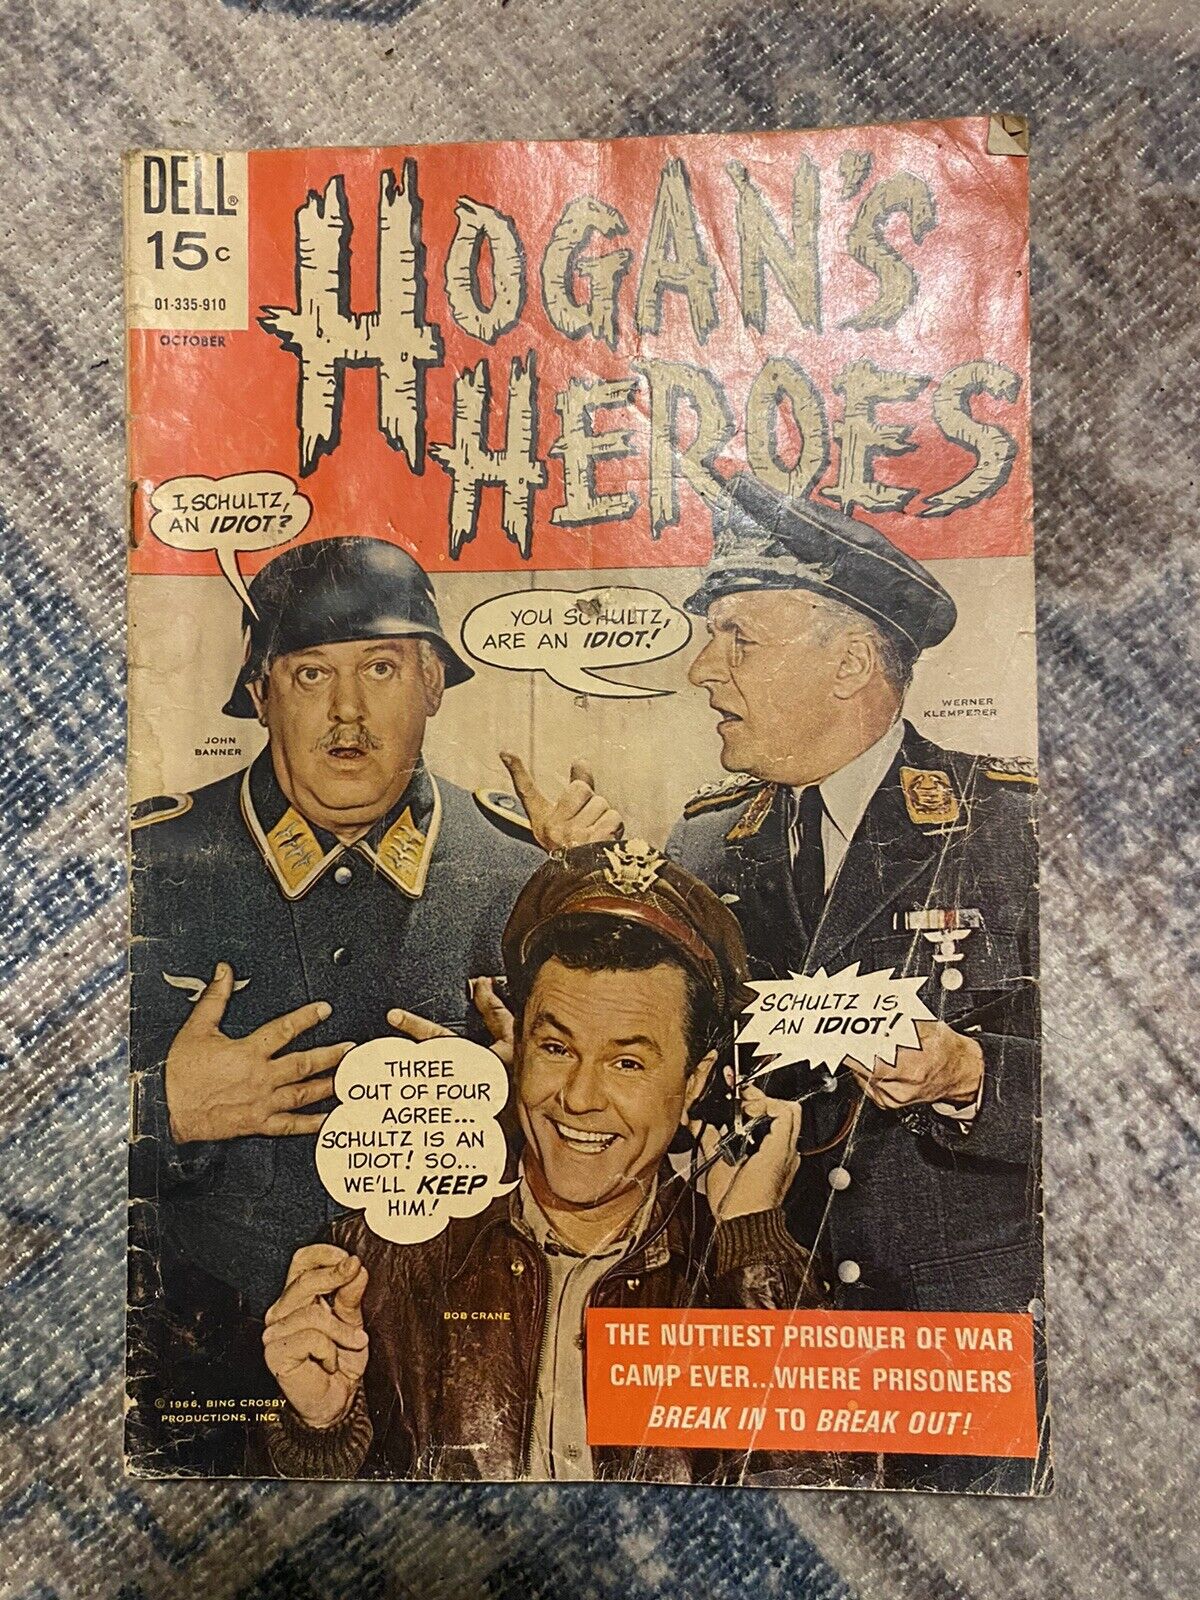 VTG 1966 Dell Comics HOGAN\'S HEROES #1 Tv Show 15 Cents